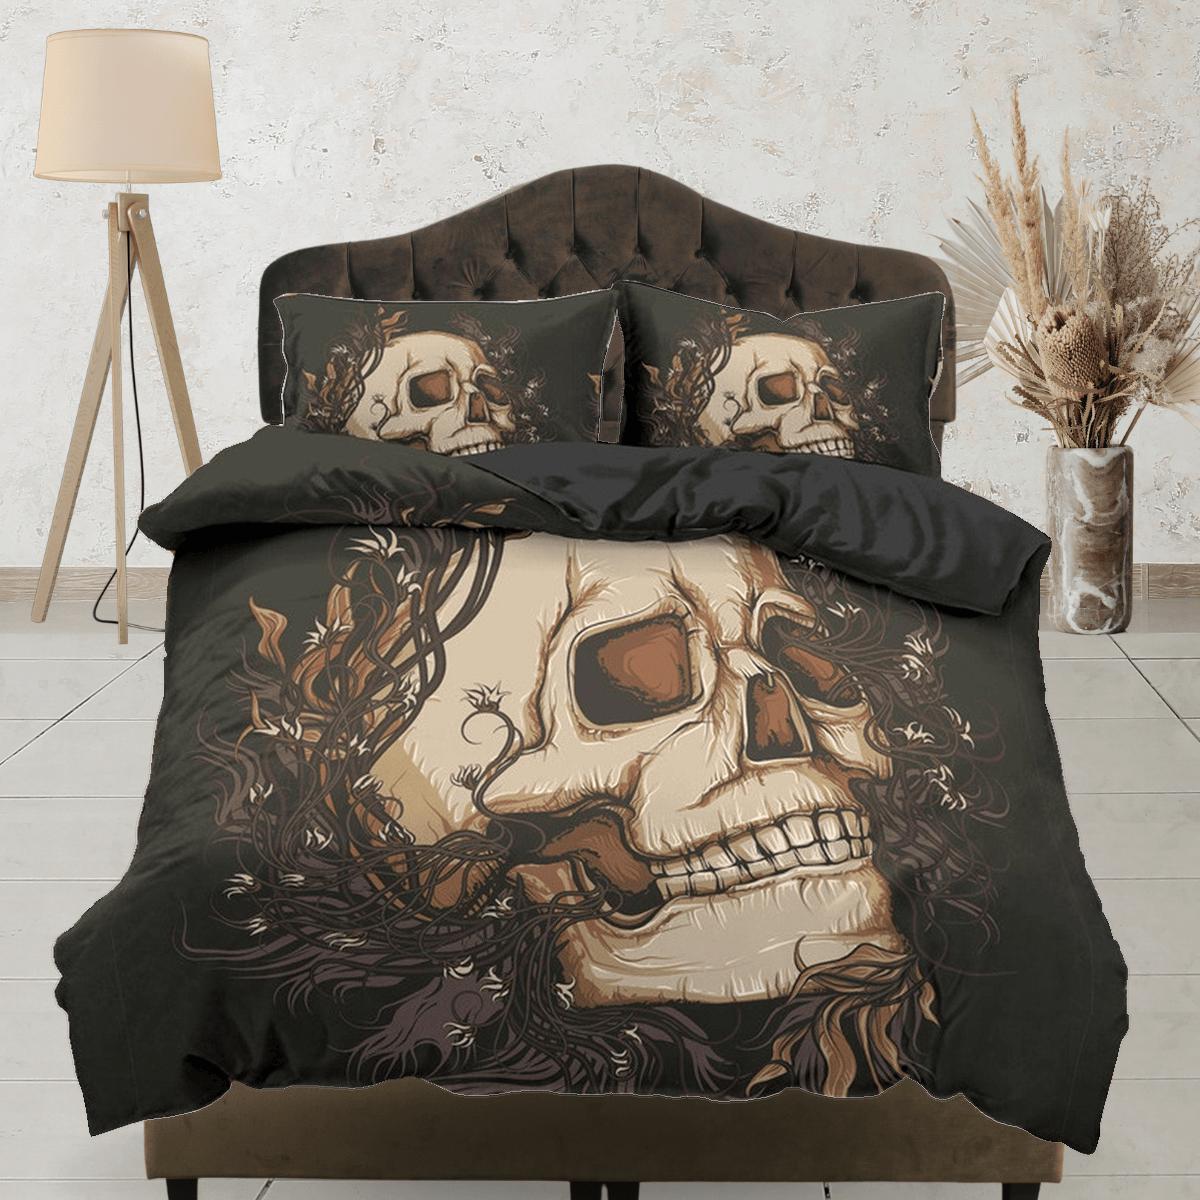 daintyduvet Skull Black Duvet Cover Set Bedspread, Dorm Bedding with Pillowcase